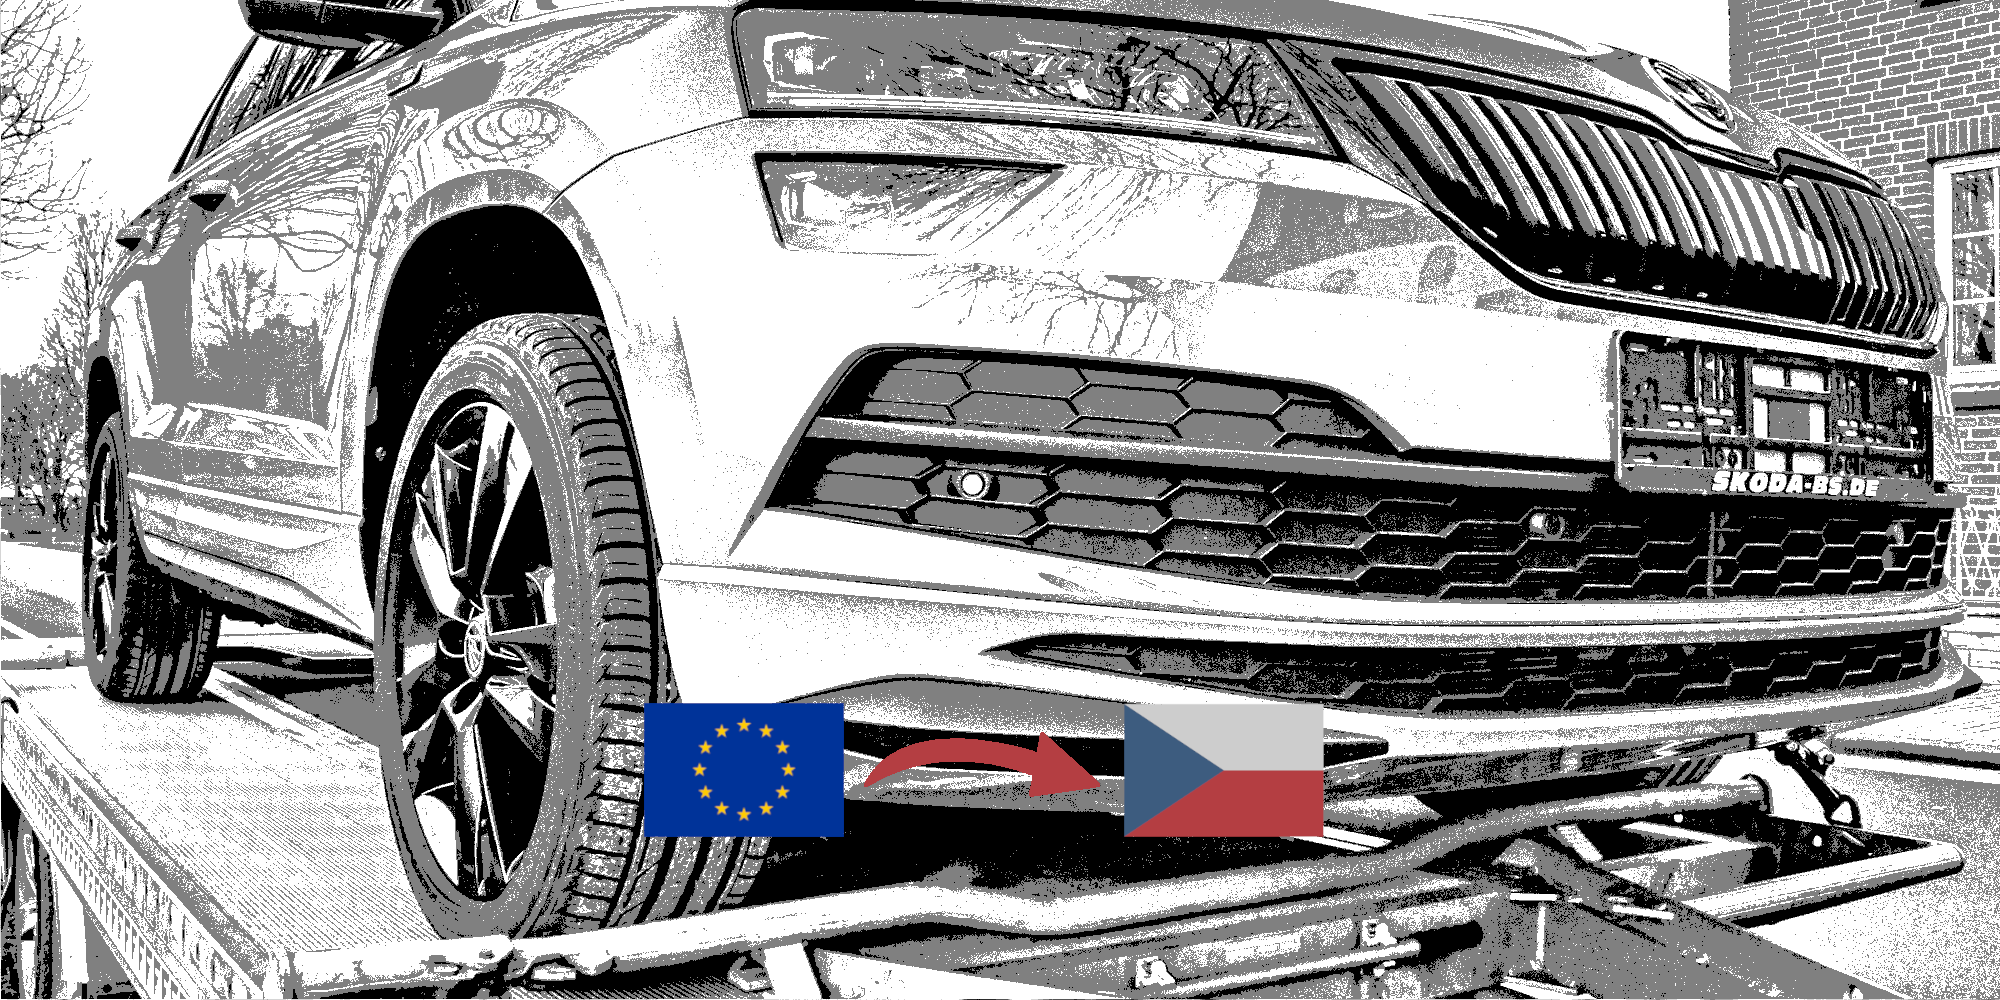 Zápis ojetého vozidla ze státu EU